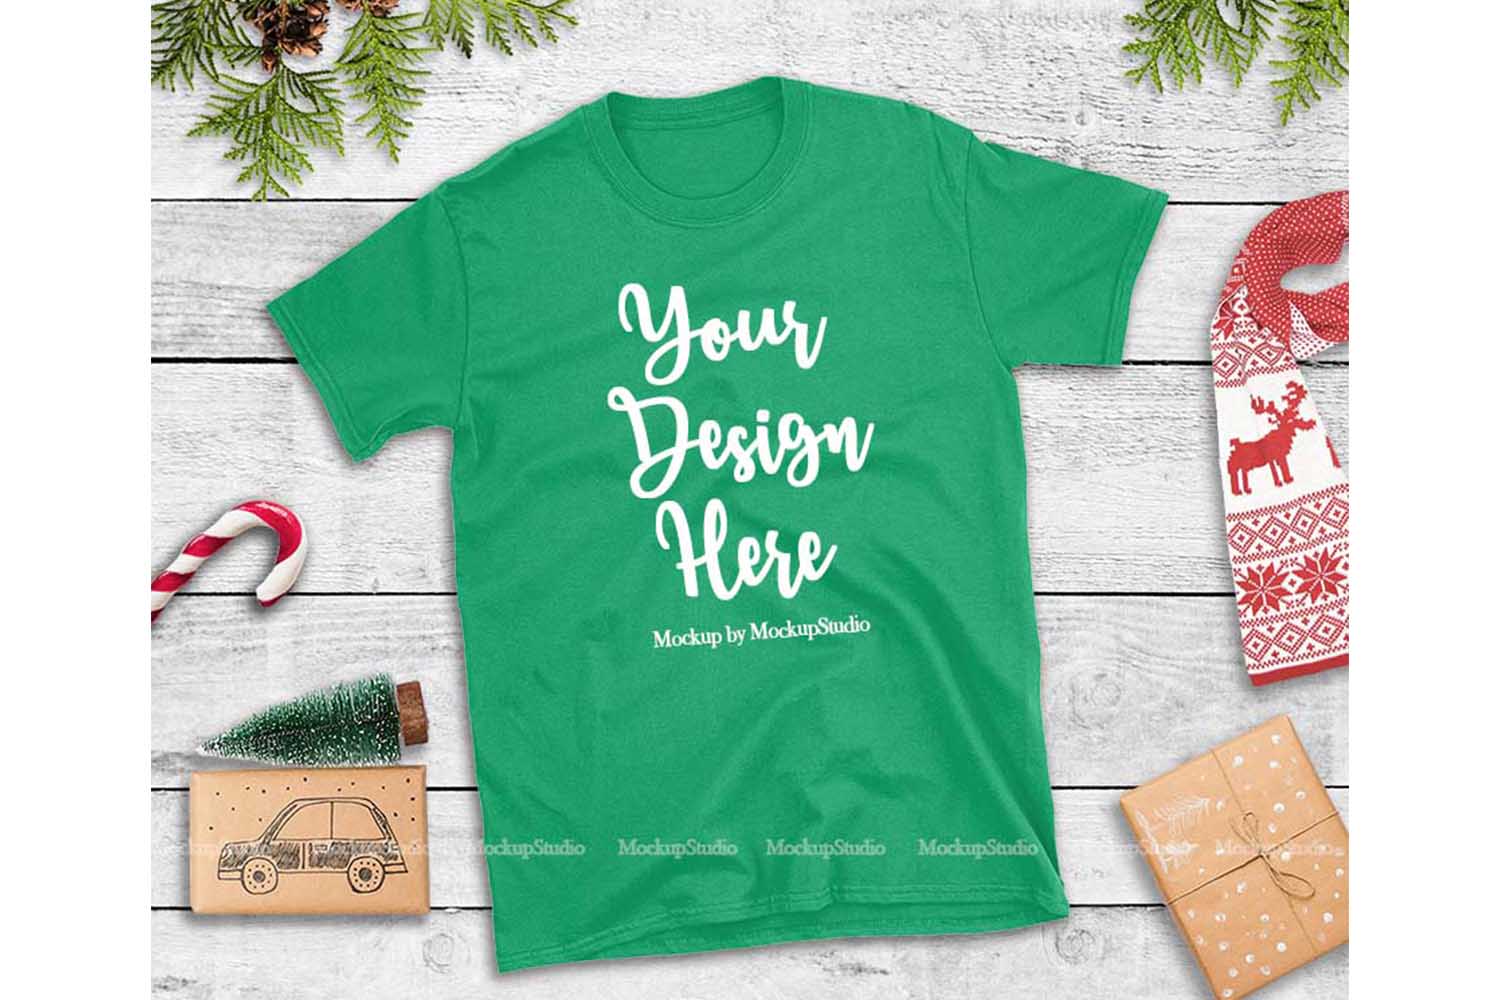 Download Green Christmas Tshirt Mockup Flat Lay Holiday Shirt Display